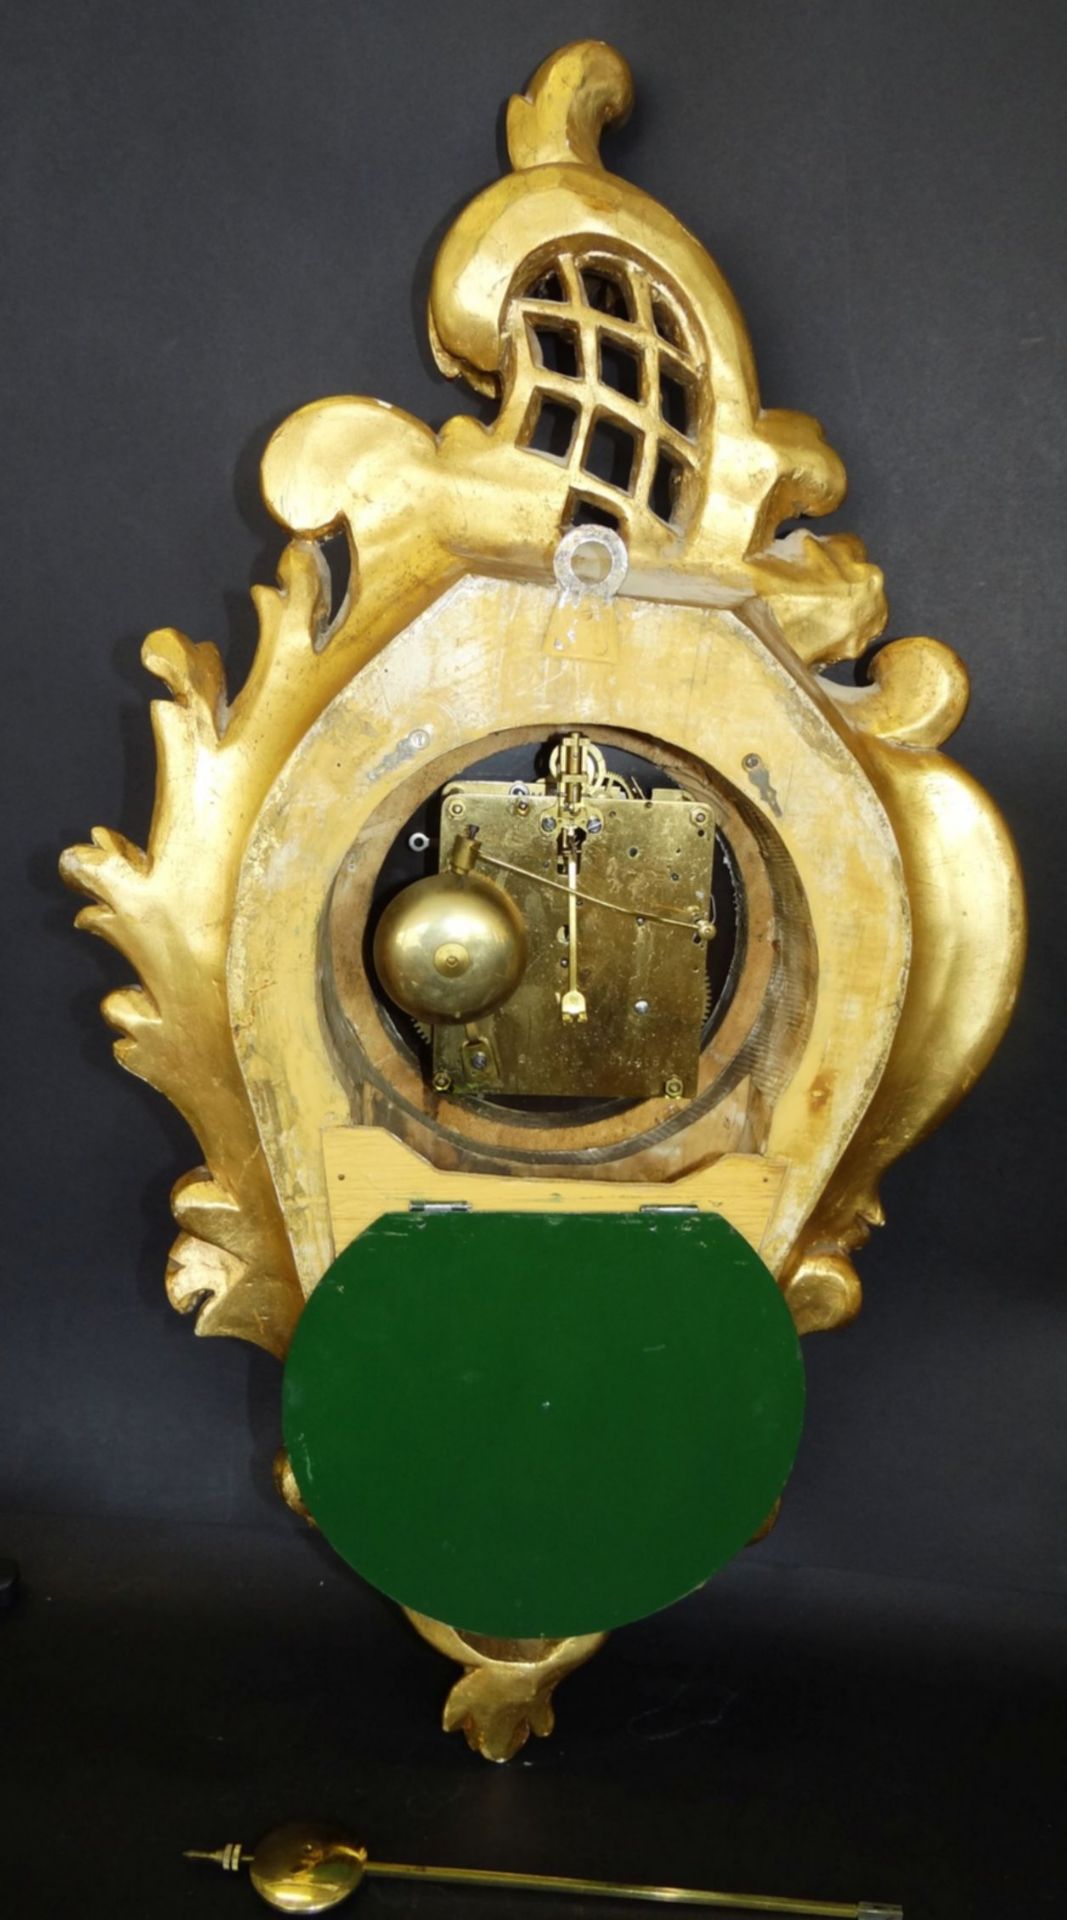 gr. Kartell-Uhr, Holz vergoldet, , H-62 cm, B-32 cm, guter Zustand, leider falsches , zu langes - Bild 8 aus 10